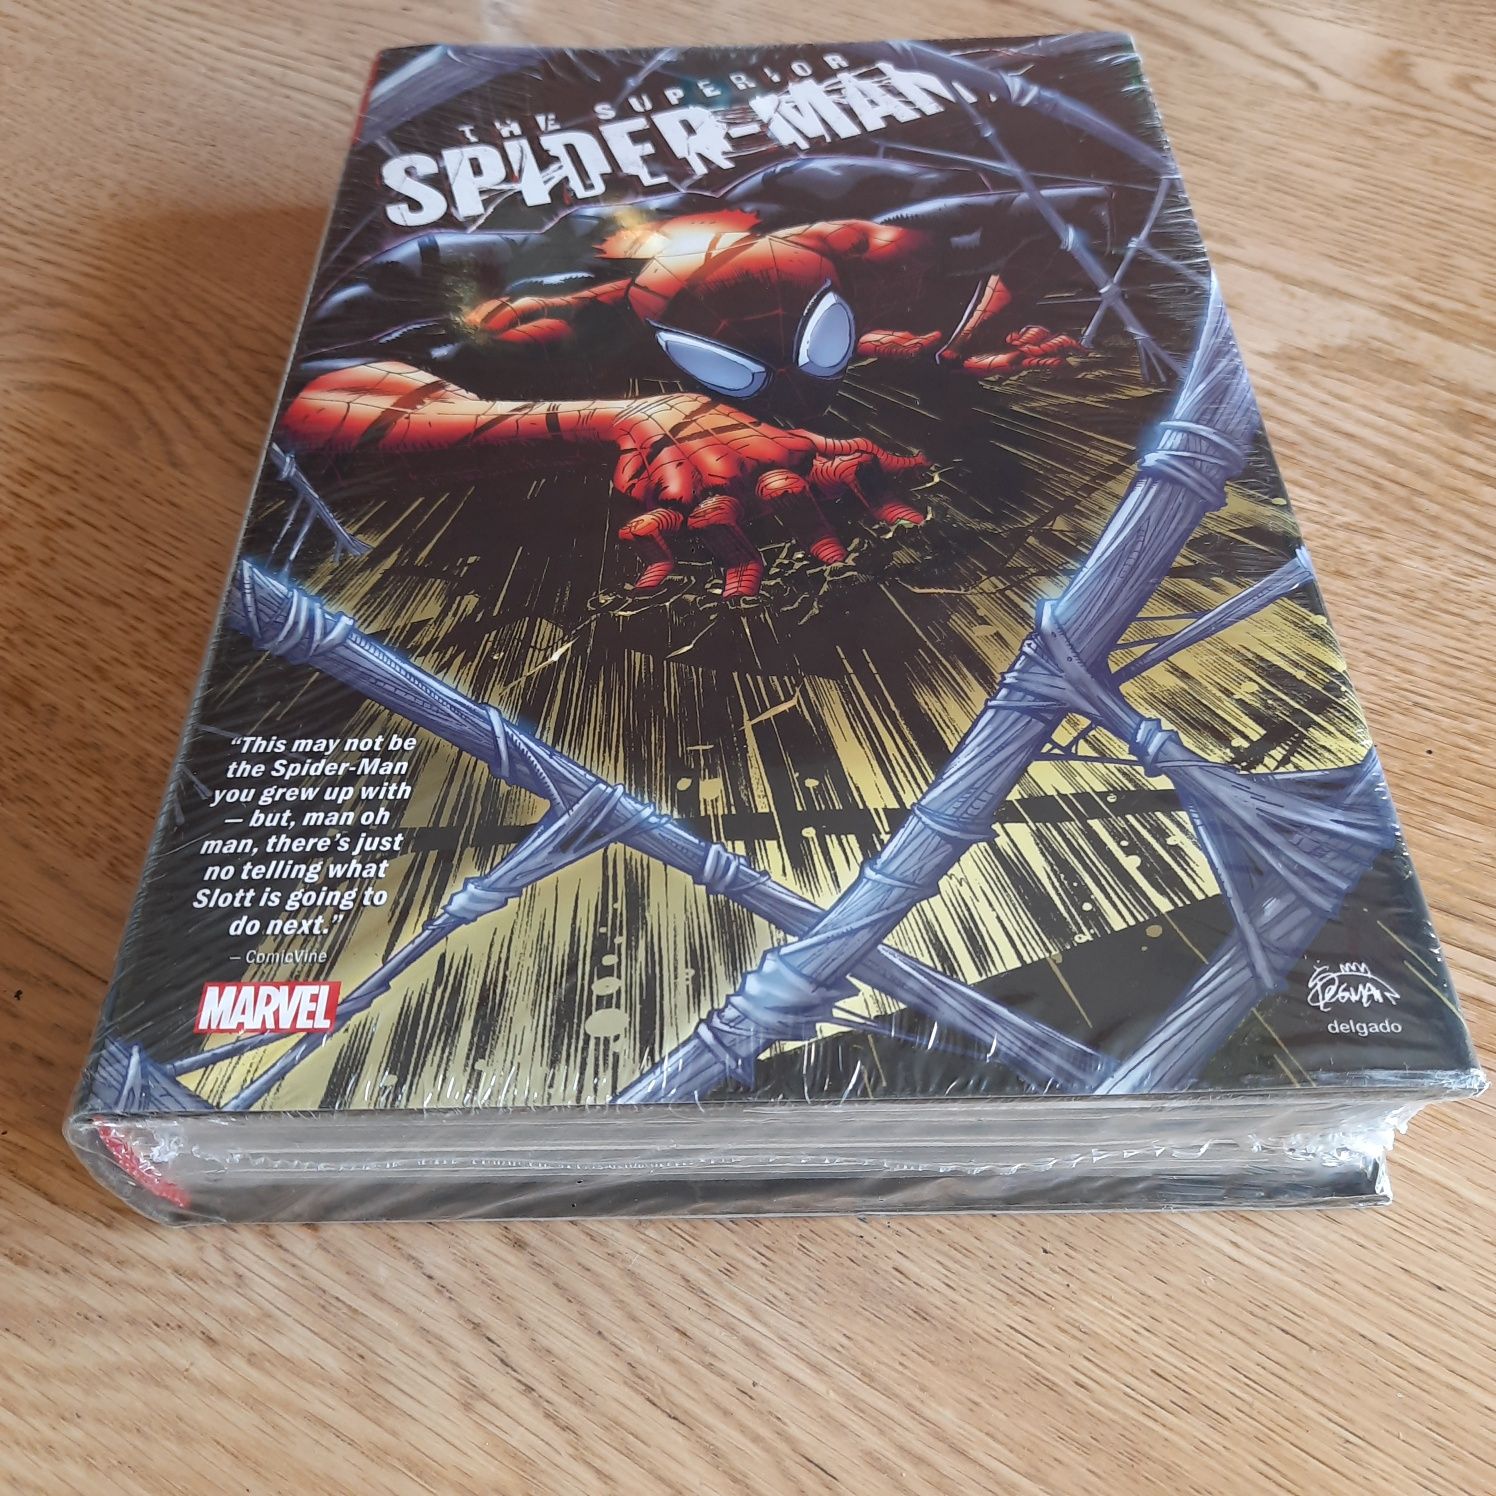 Superior Spider-man Omnibus